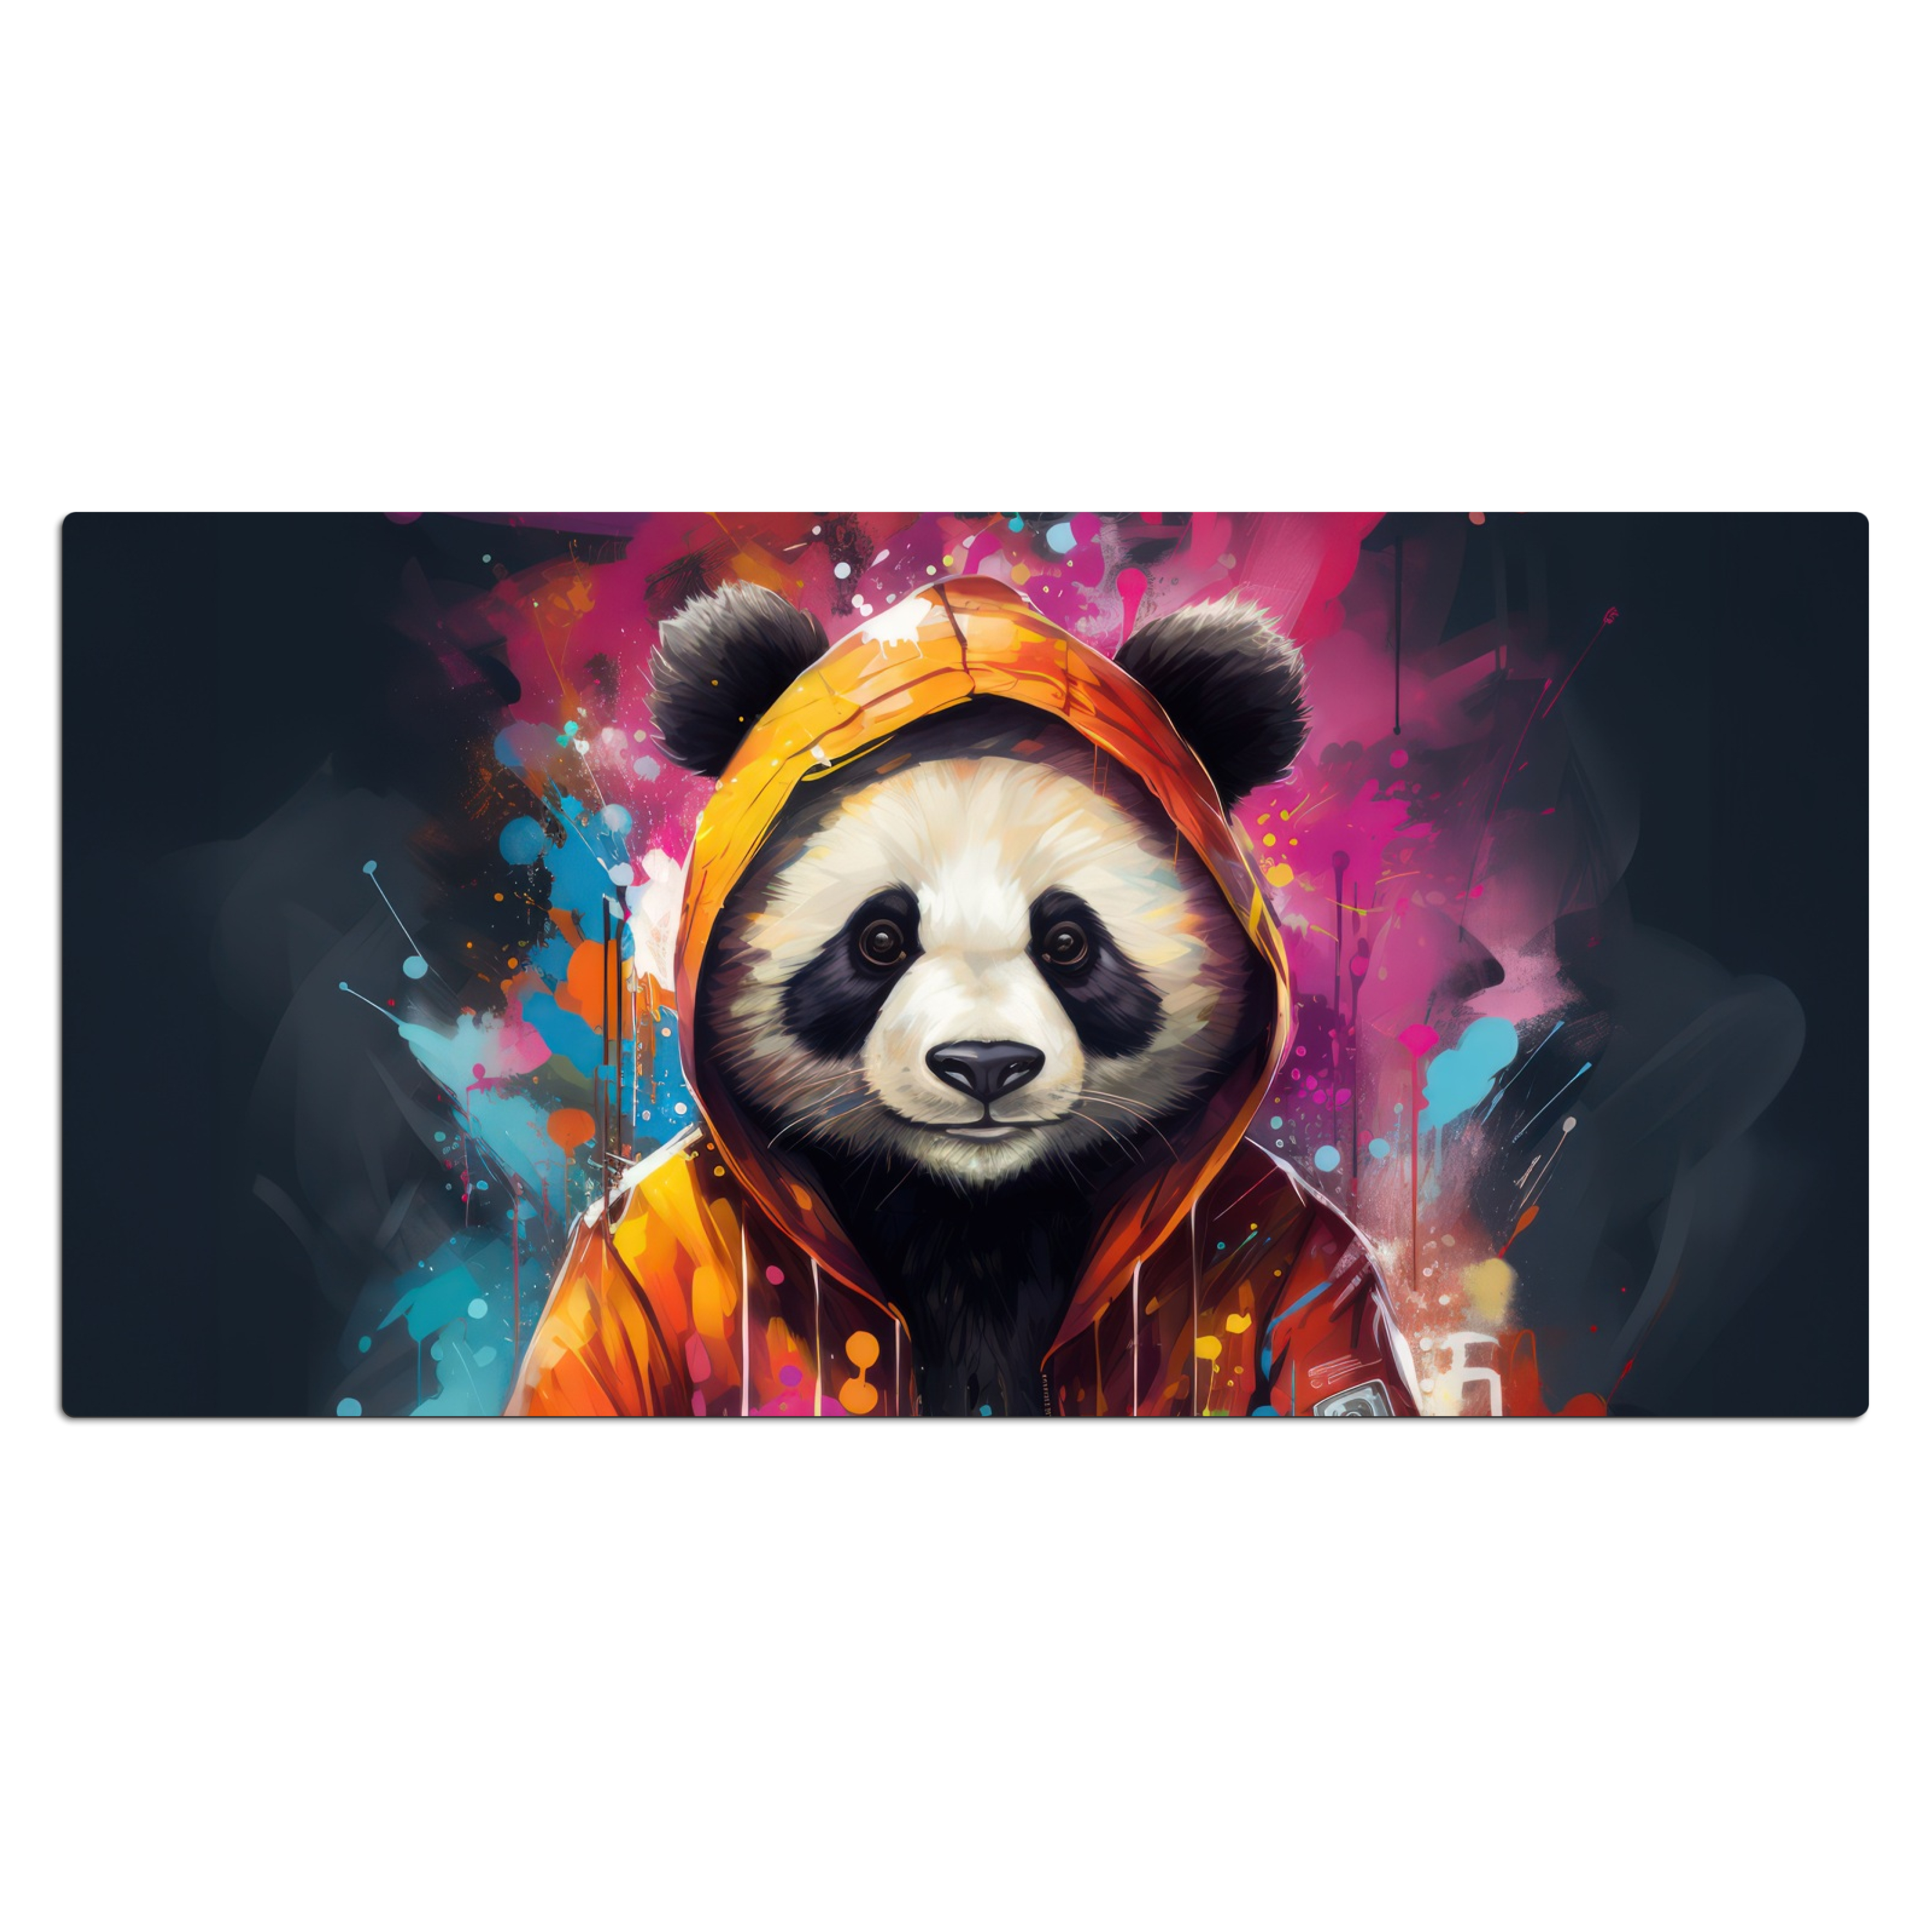 Bureau onderlegger - Panda - Jas - Graffiti - Oranje